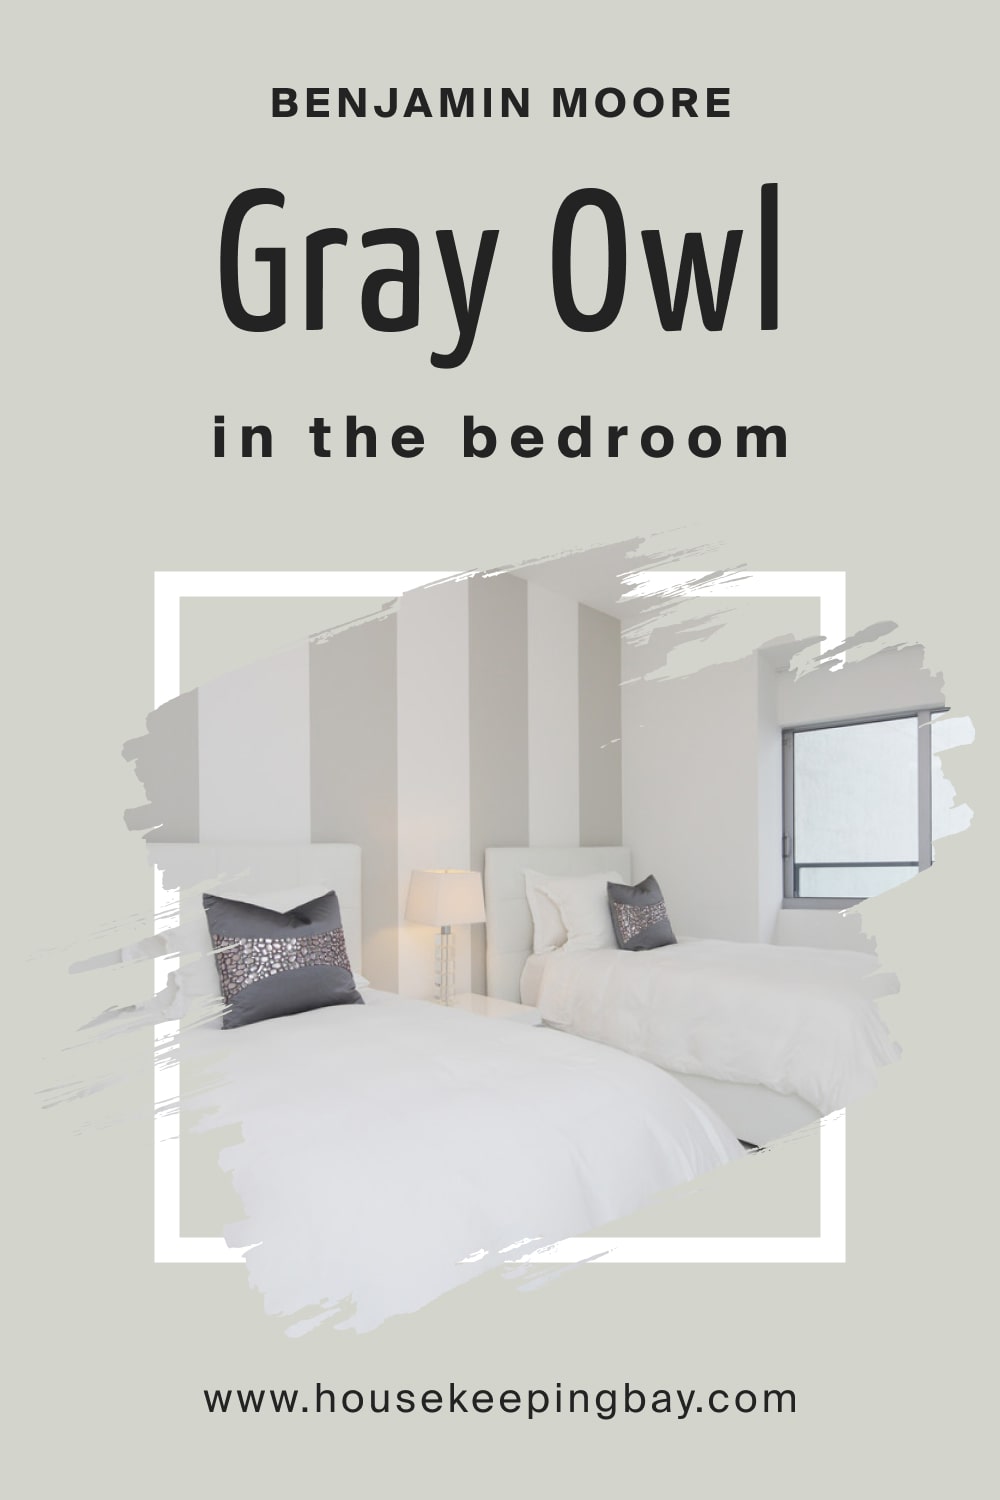 Benjamin Moore. Gray Owl 2137 60 for the Bedroom